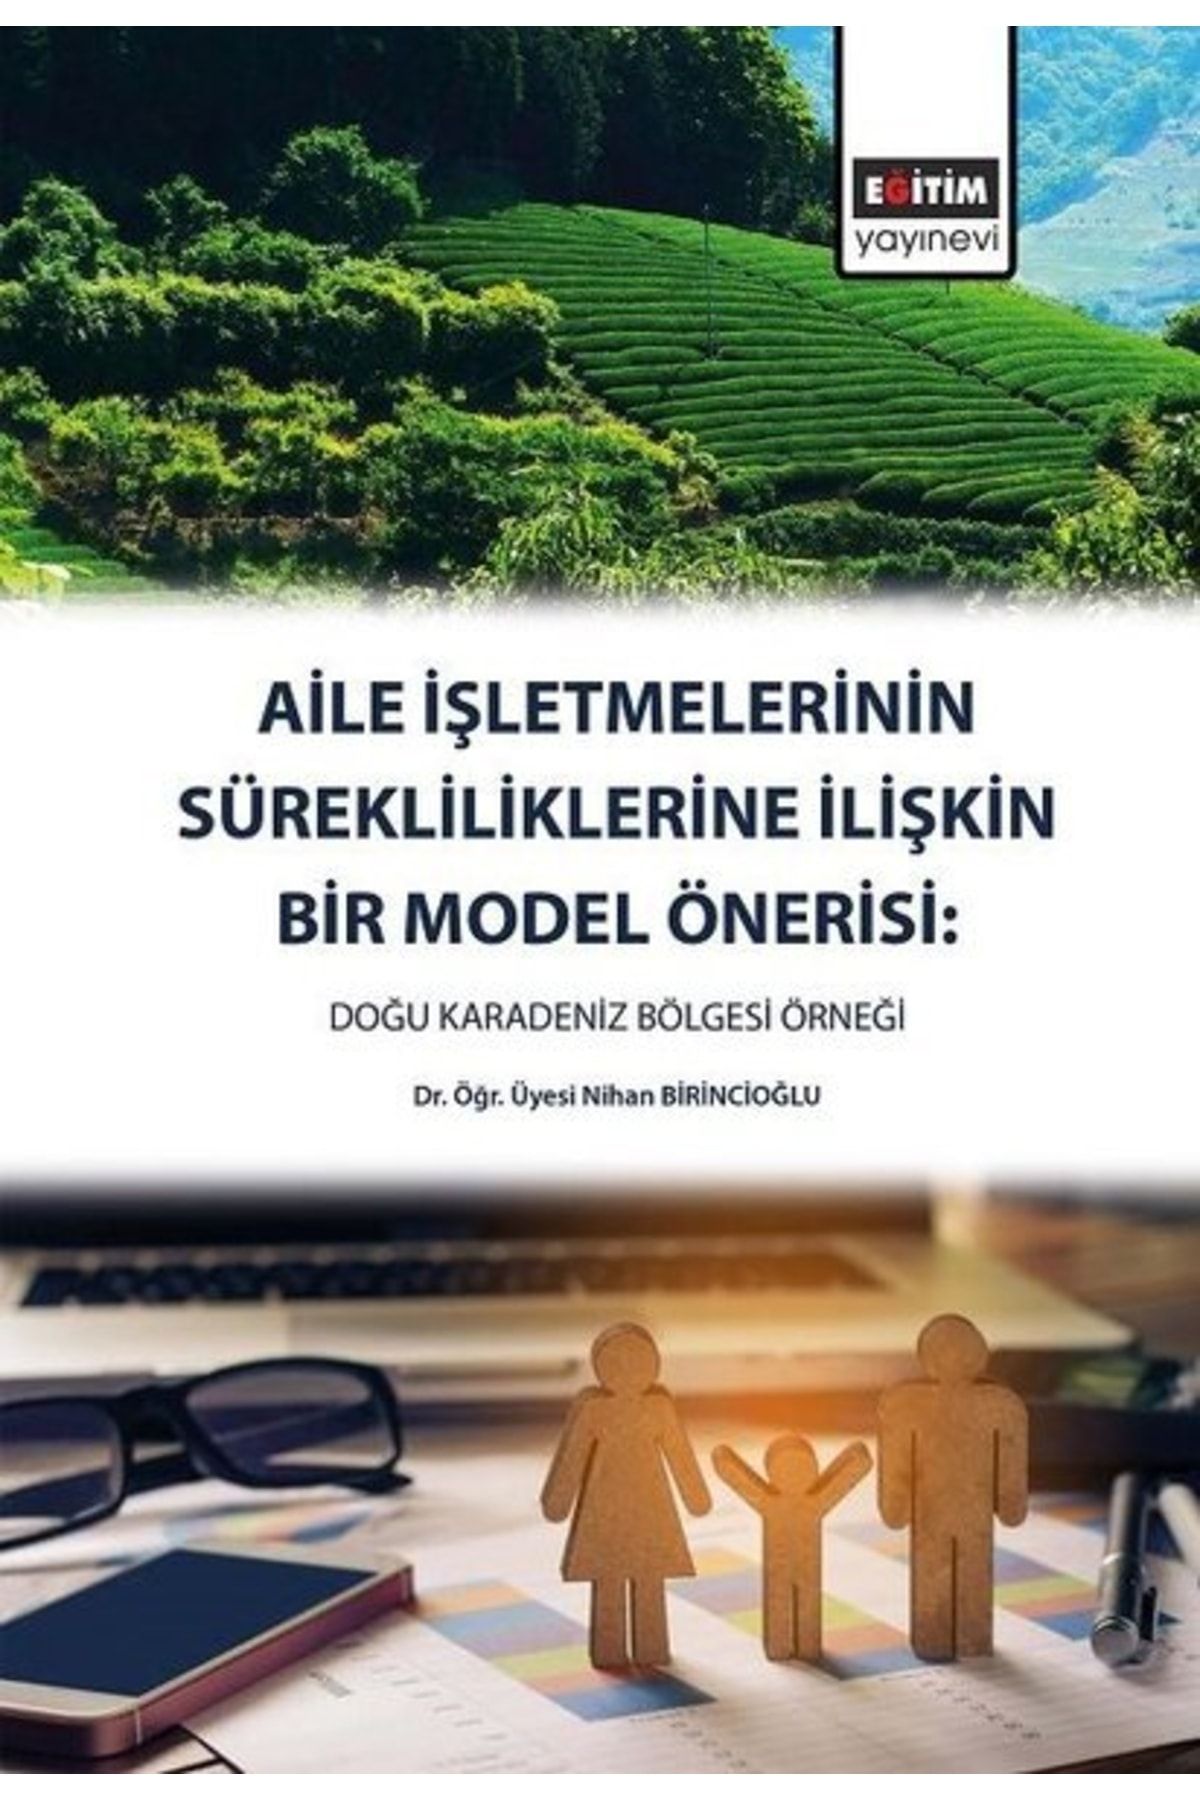 Eğitim Yayınevi Aile Işletmelerinin Sürekliliklerine Ilişkin Bir Model Önerisi: Doğu Karadeniz